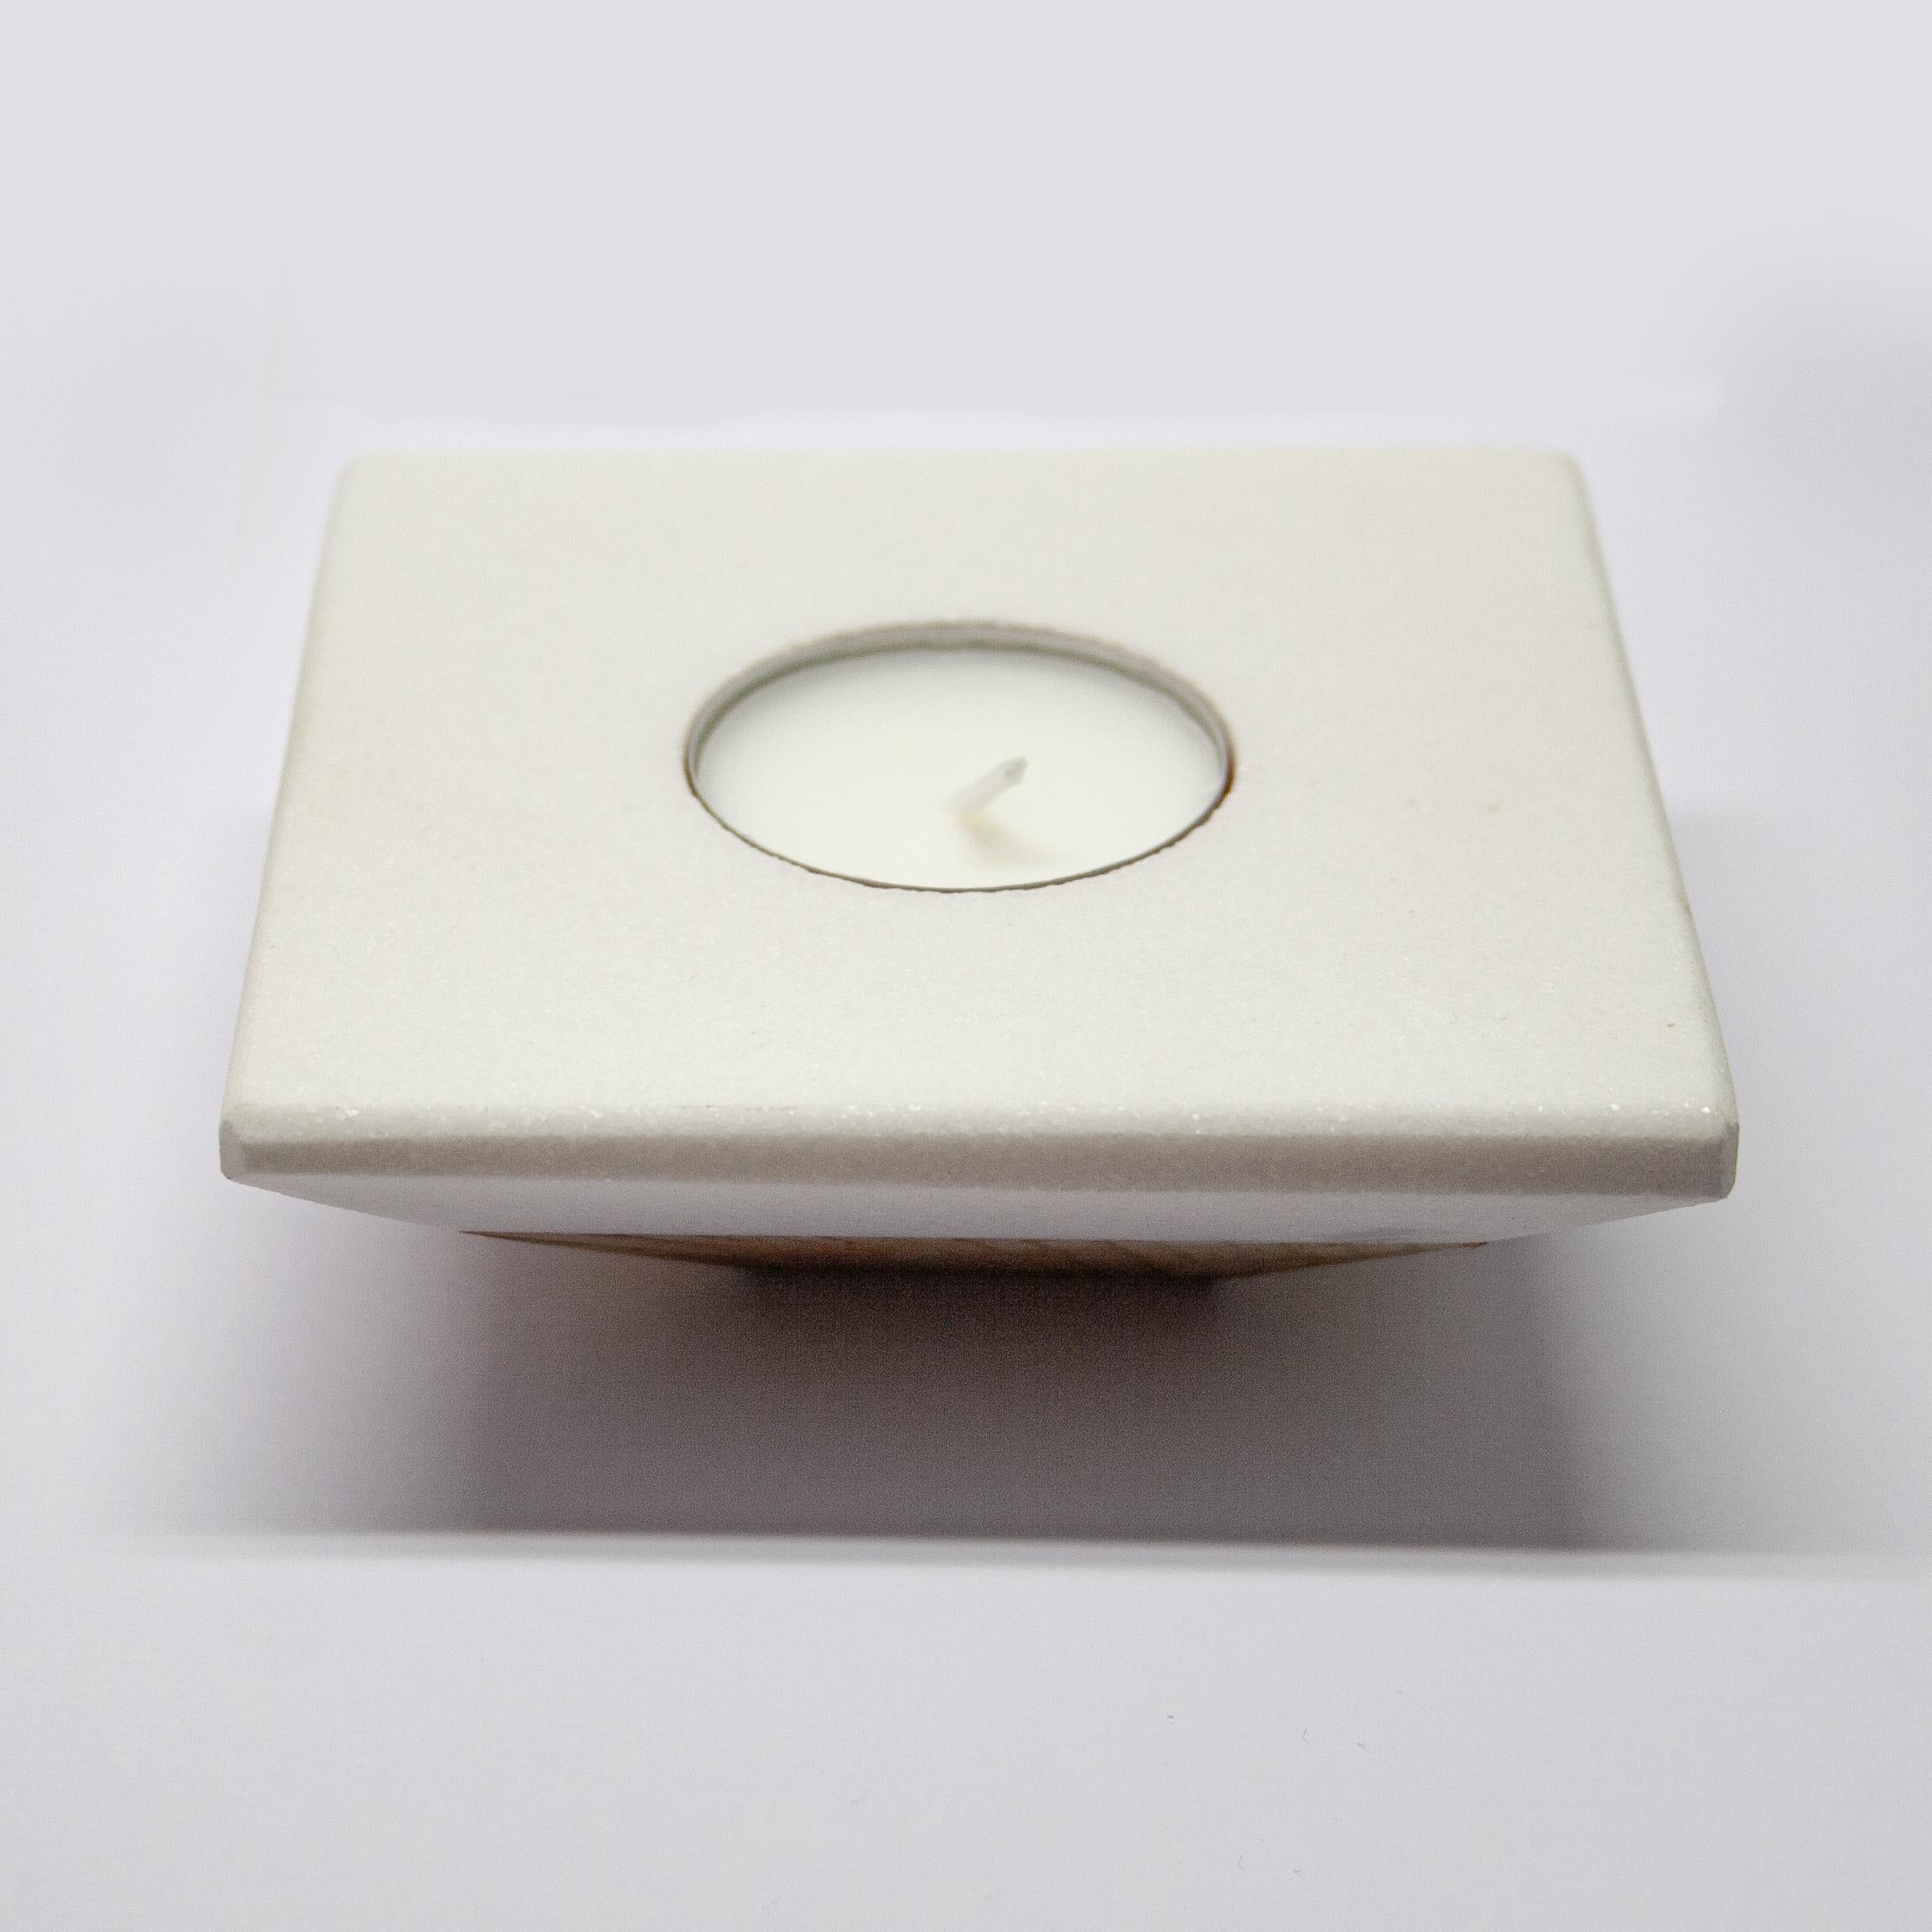 Thassos Weißer Marmor Kerzenständer Modernes Design Muttertagsgeschenk Made in Spain.
Dieser Kerzenständer ist ein dekoratives Objekt mit zeitgenössischem Design und geraden Linien. Seine umgedrehte pyramidenförmige Struktur besteht aus einer oberen